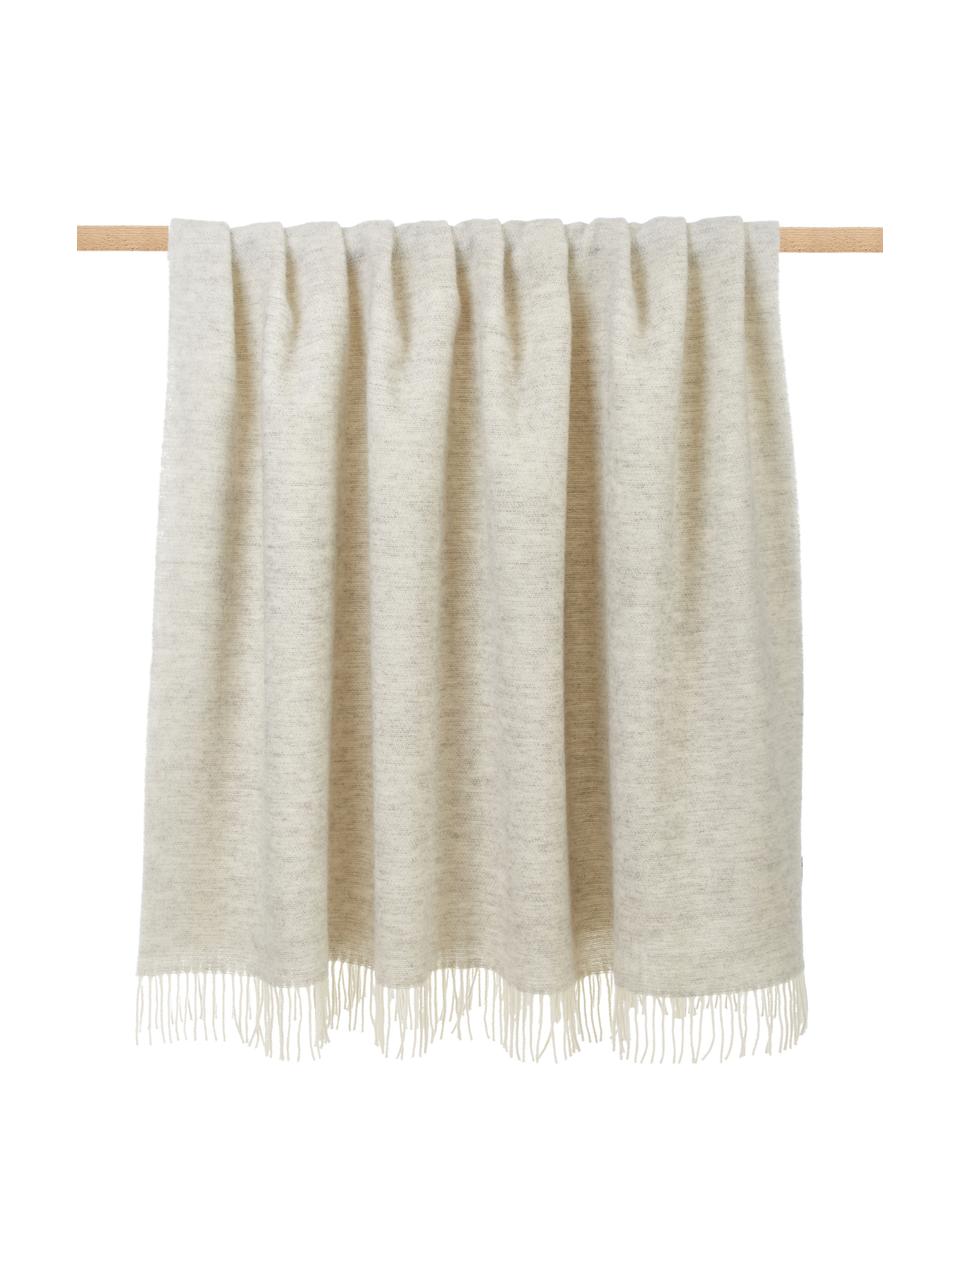 Manta de lana con flecos Tirol, Gris claro, blanco, An 140 x L 200 cm